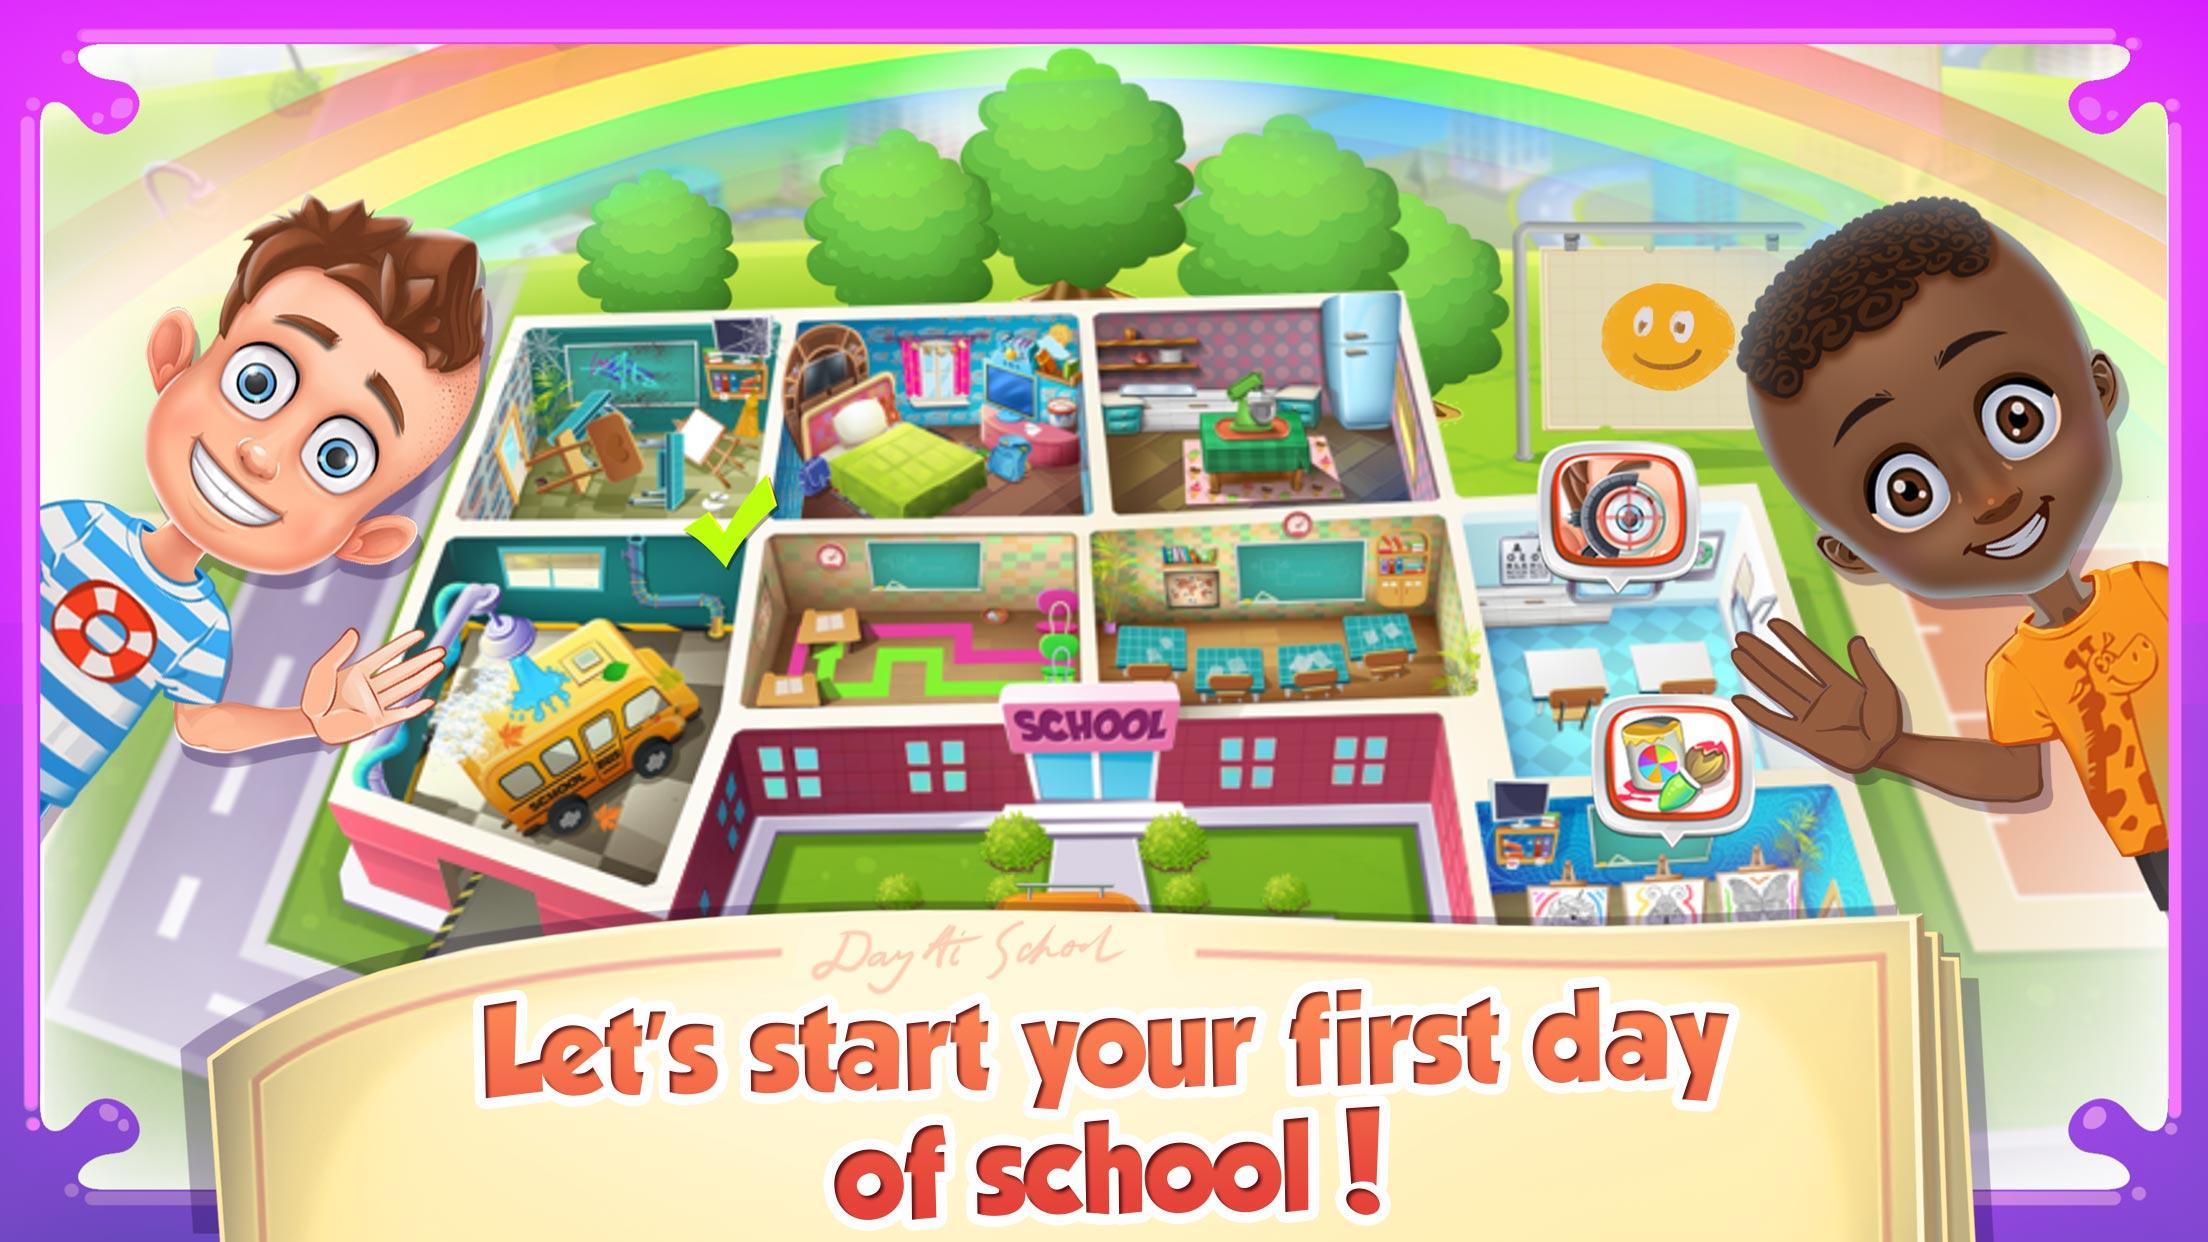 يوم في المدرسة: ألعاب أستاذي for Android - APK Download